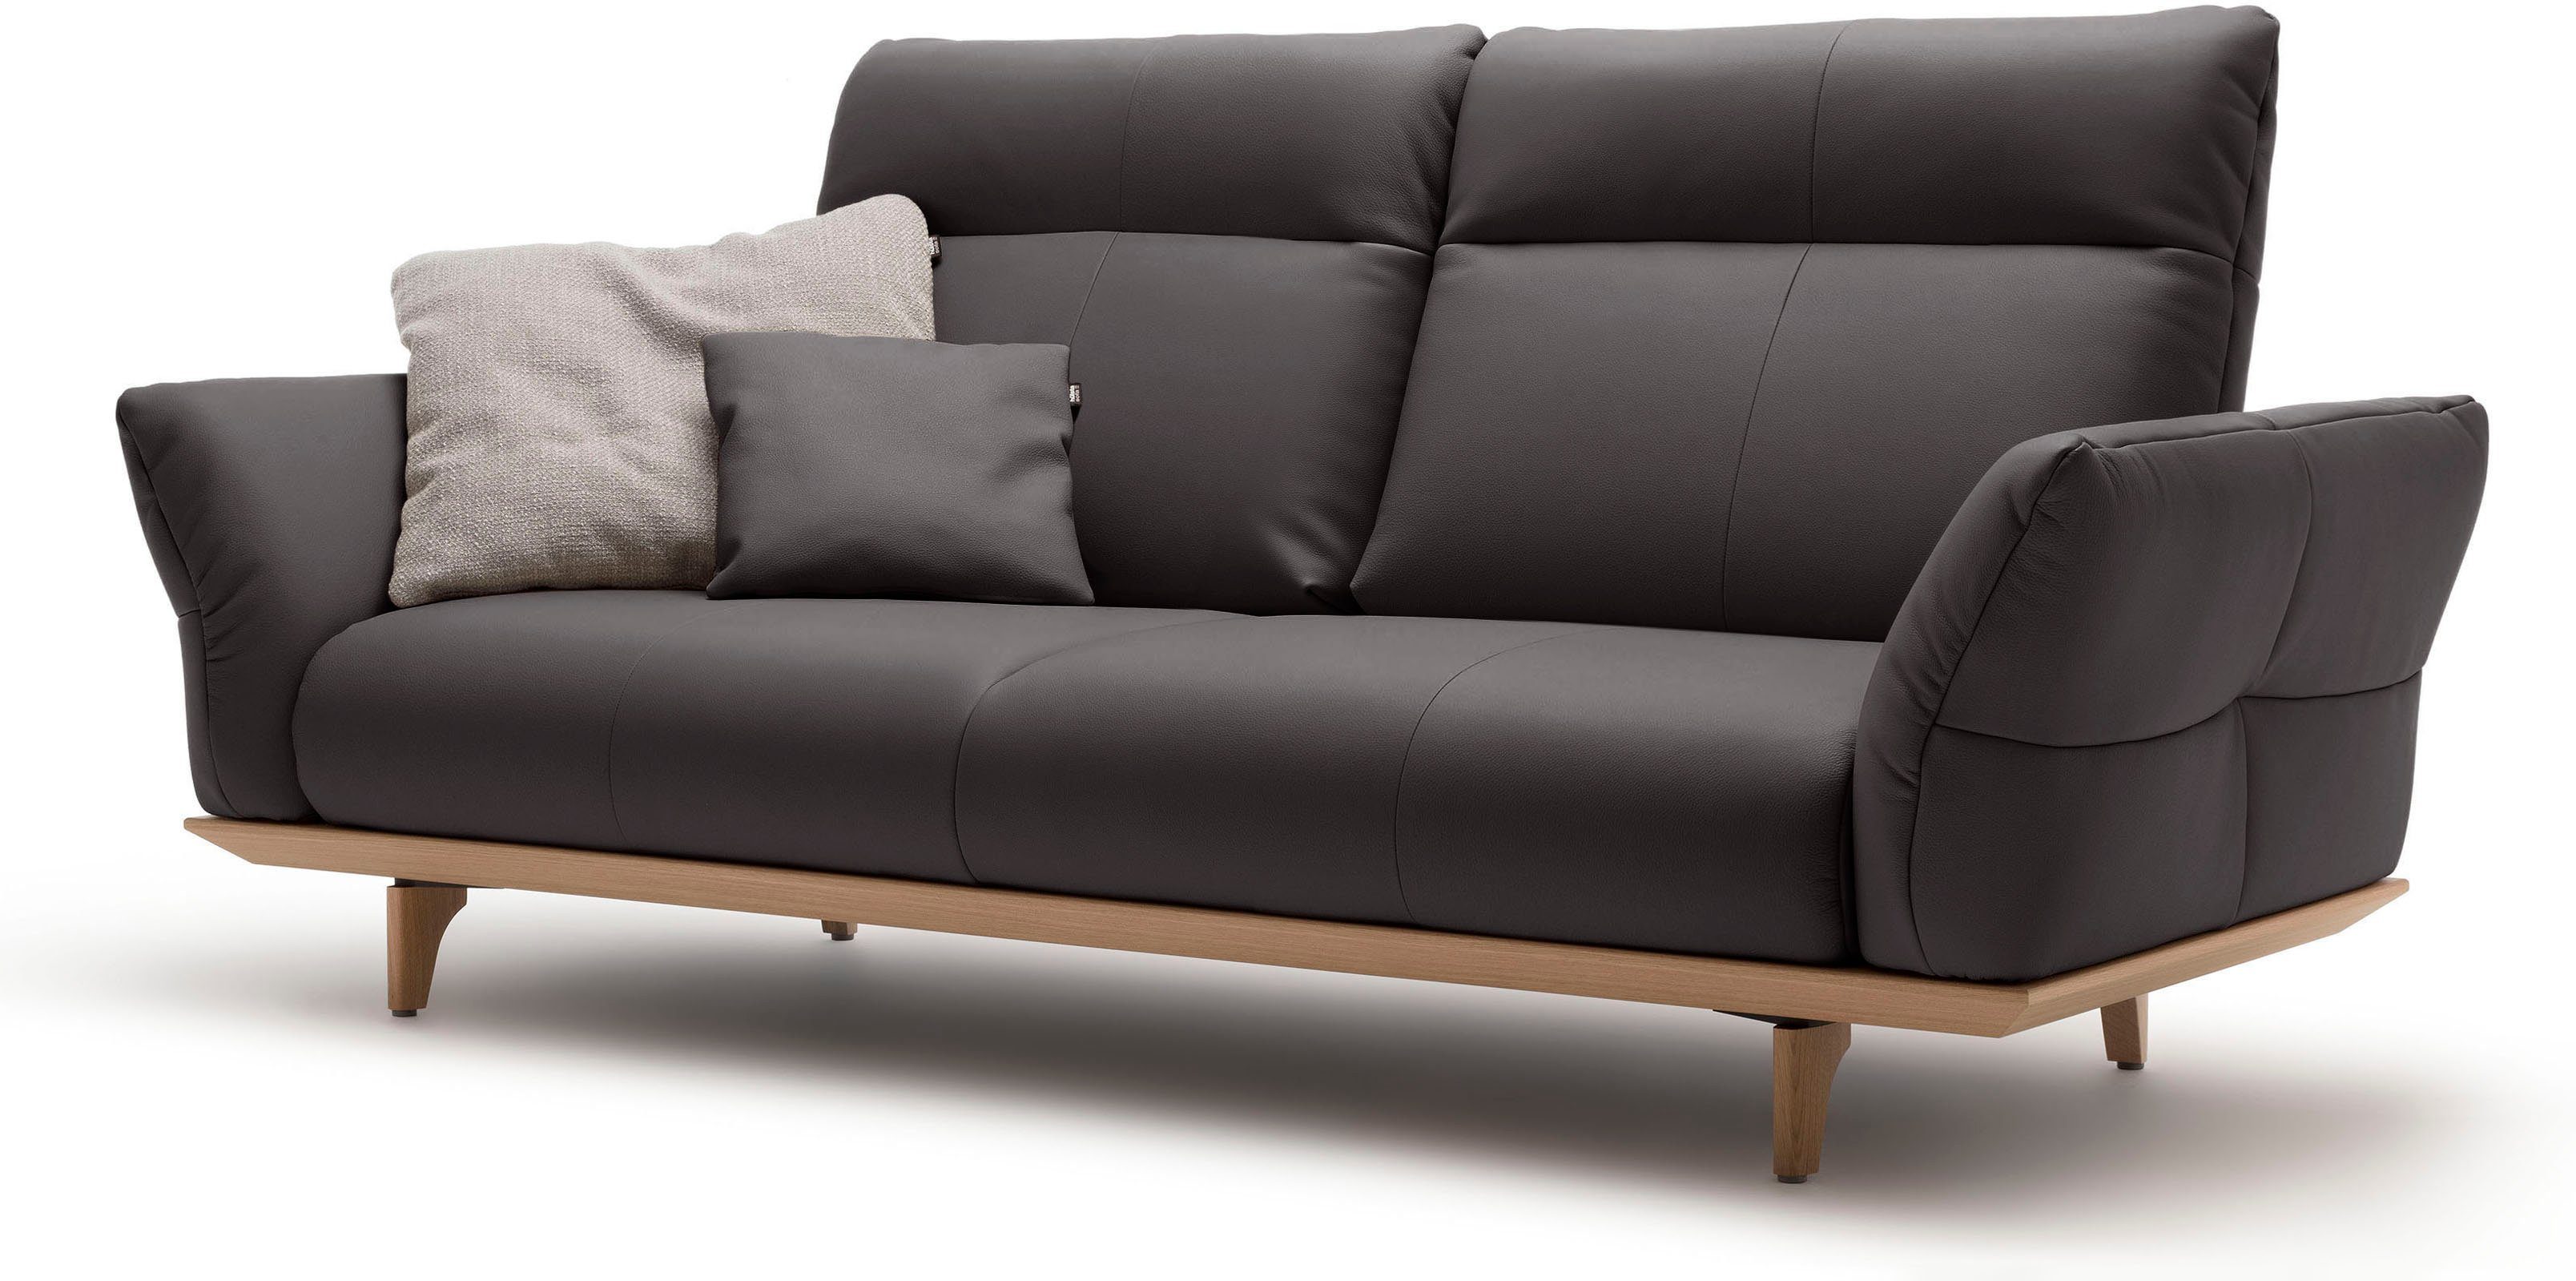 Eiche Sockel sofa cm Breite in 3-Sitzer Eiche, natur, 208 hülsta hs.460, Füße